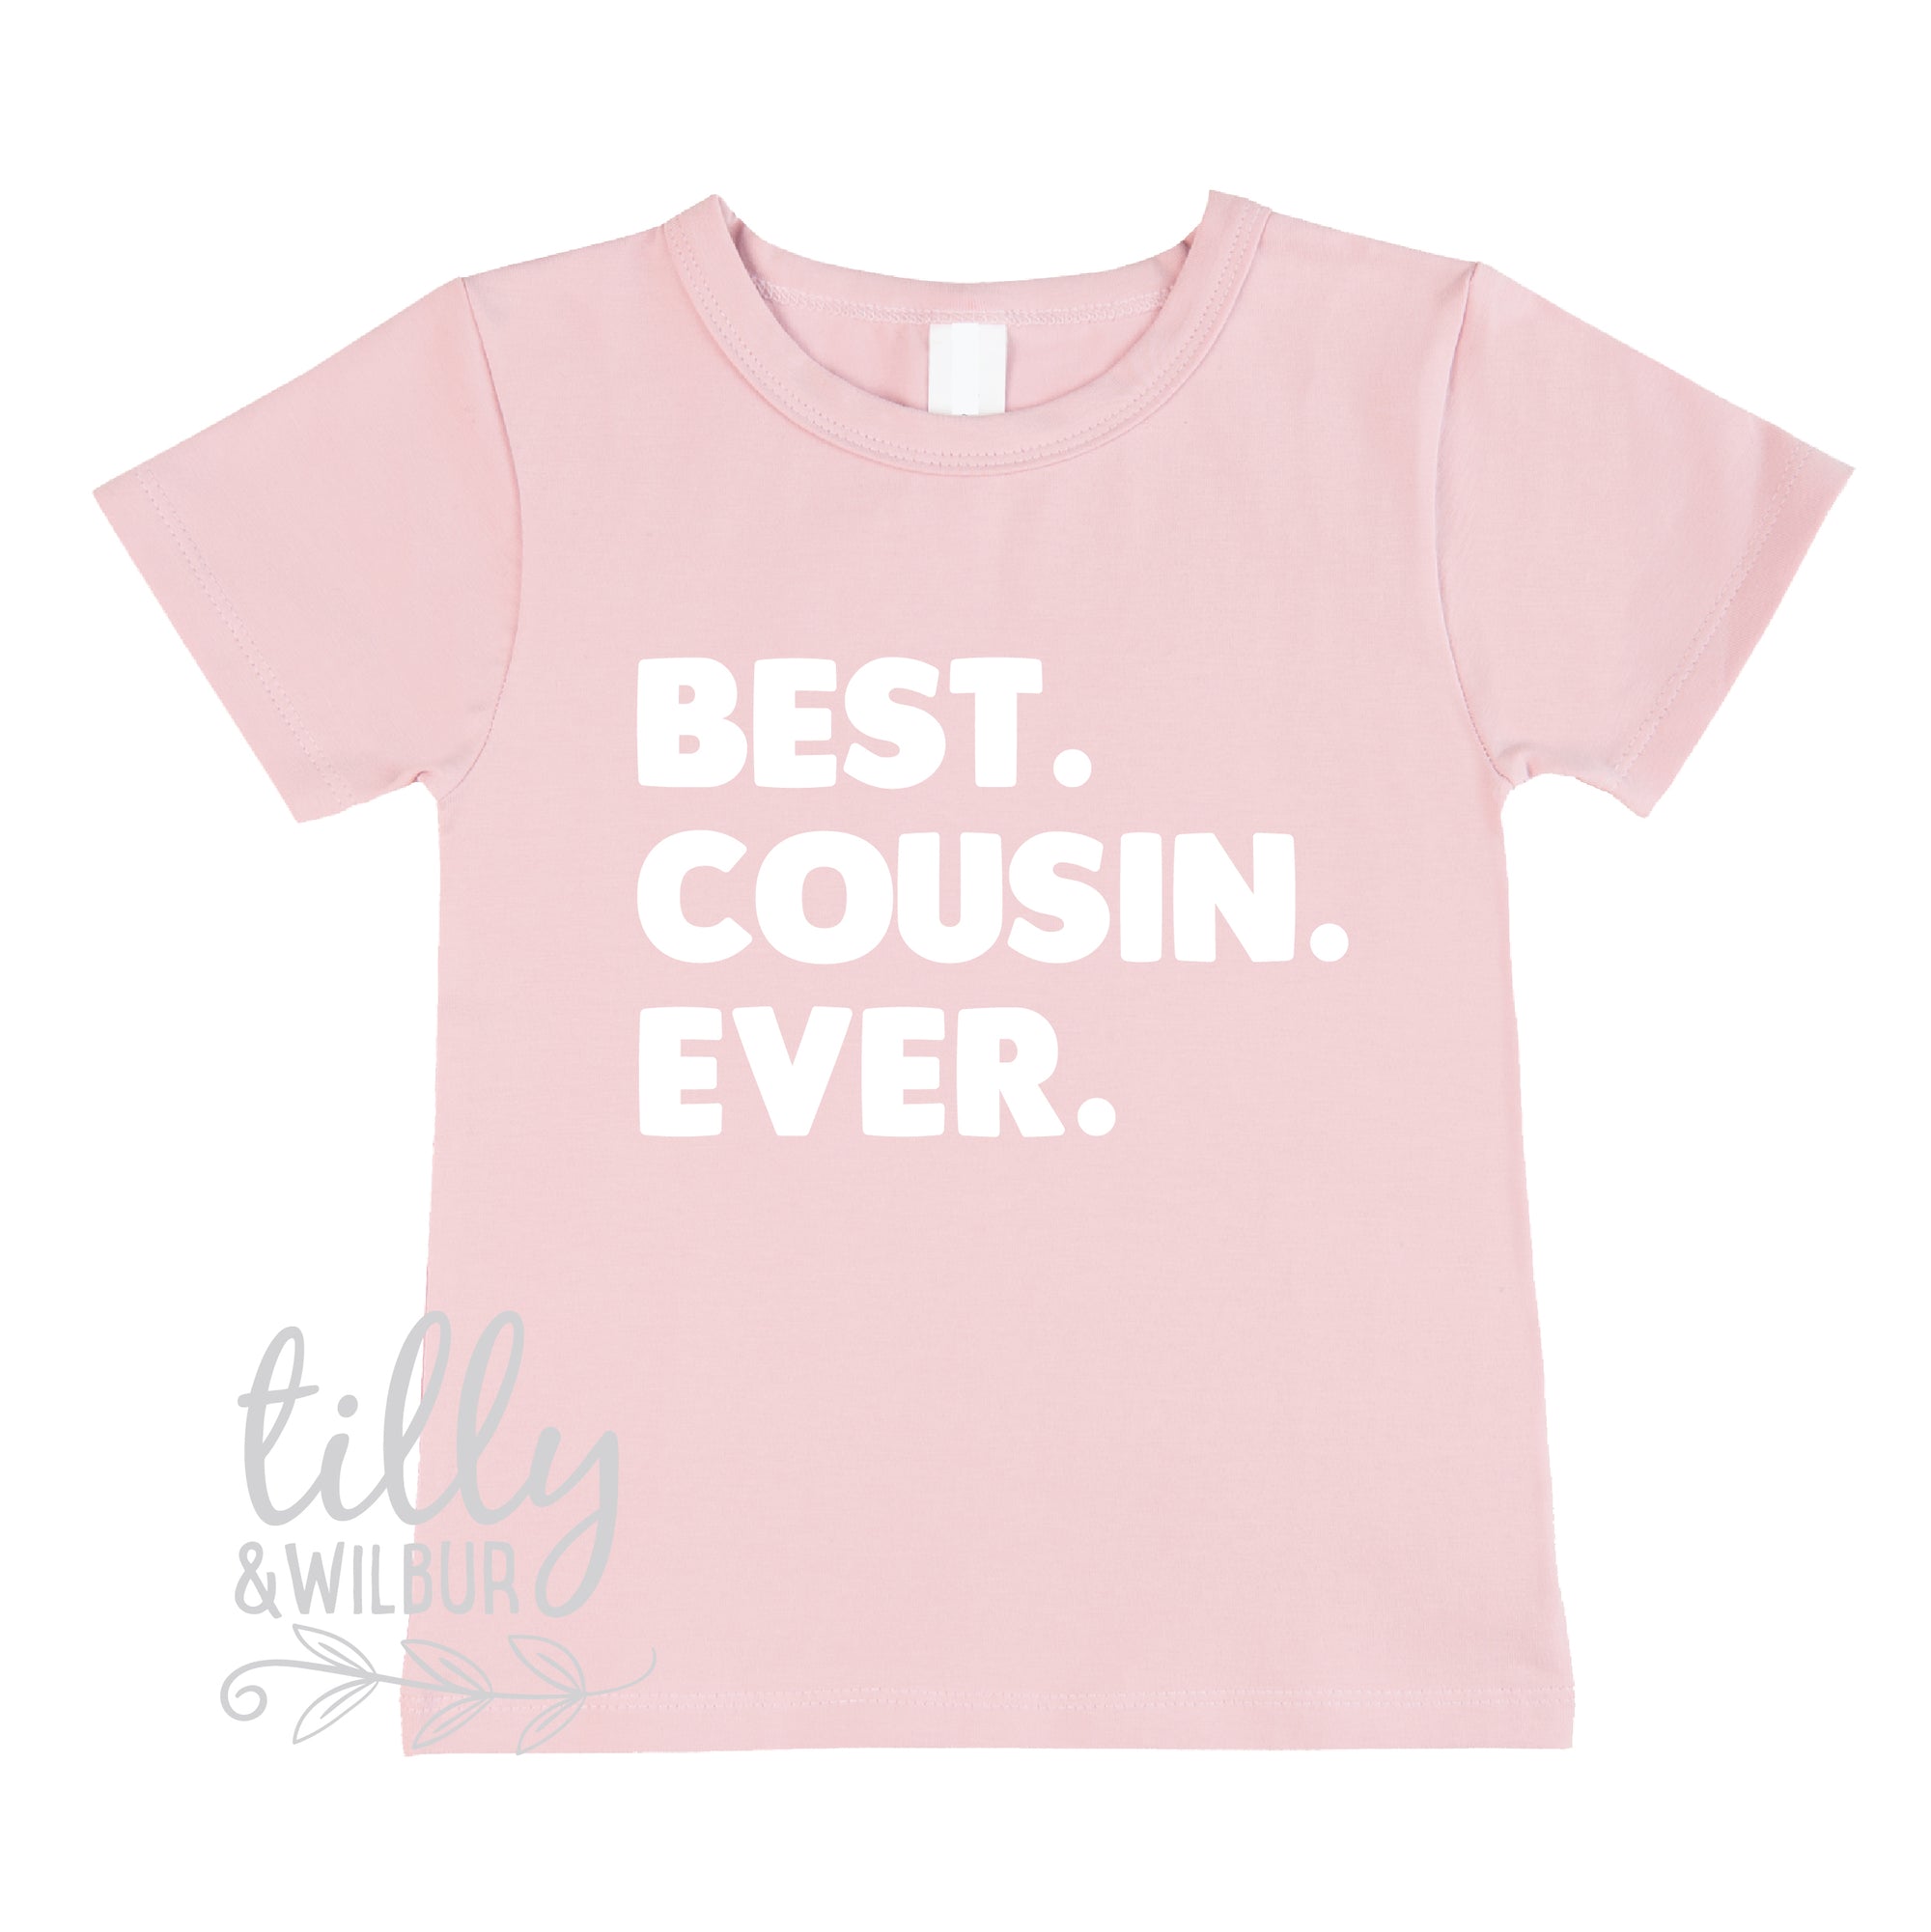 Best. Cousin. Ever. T-shirt